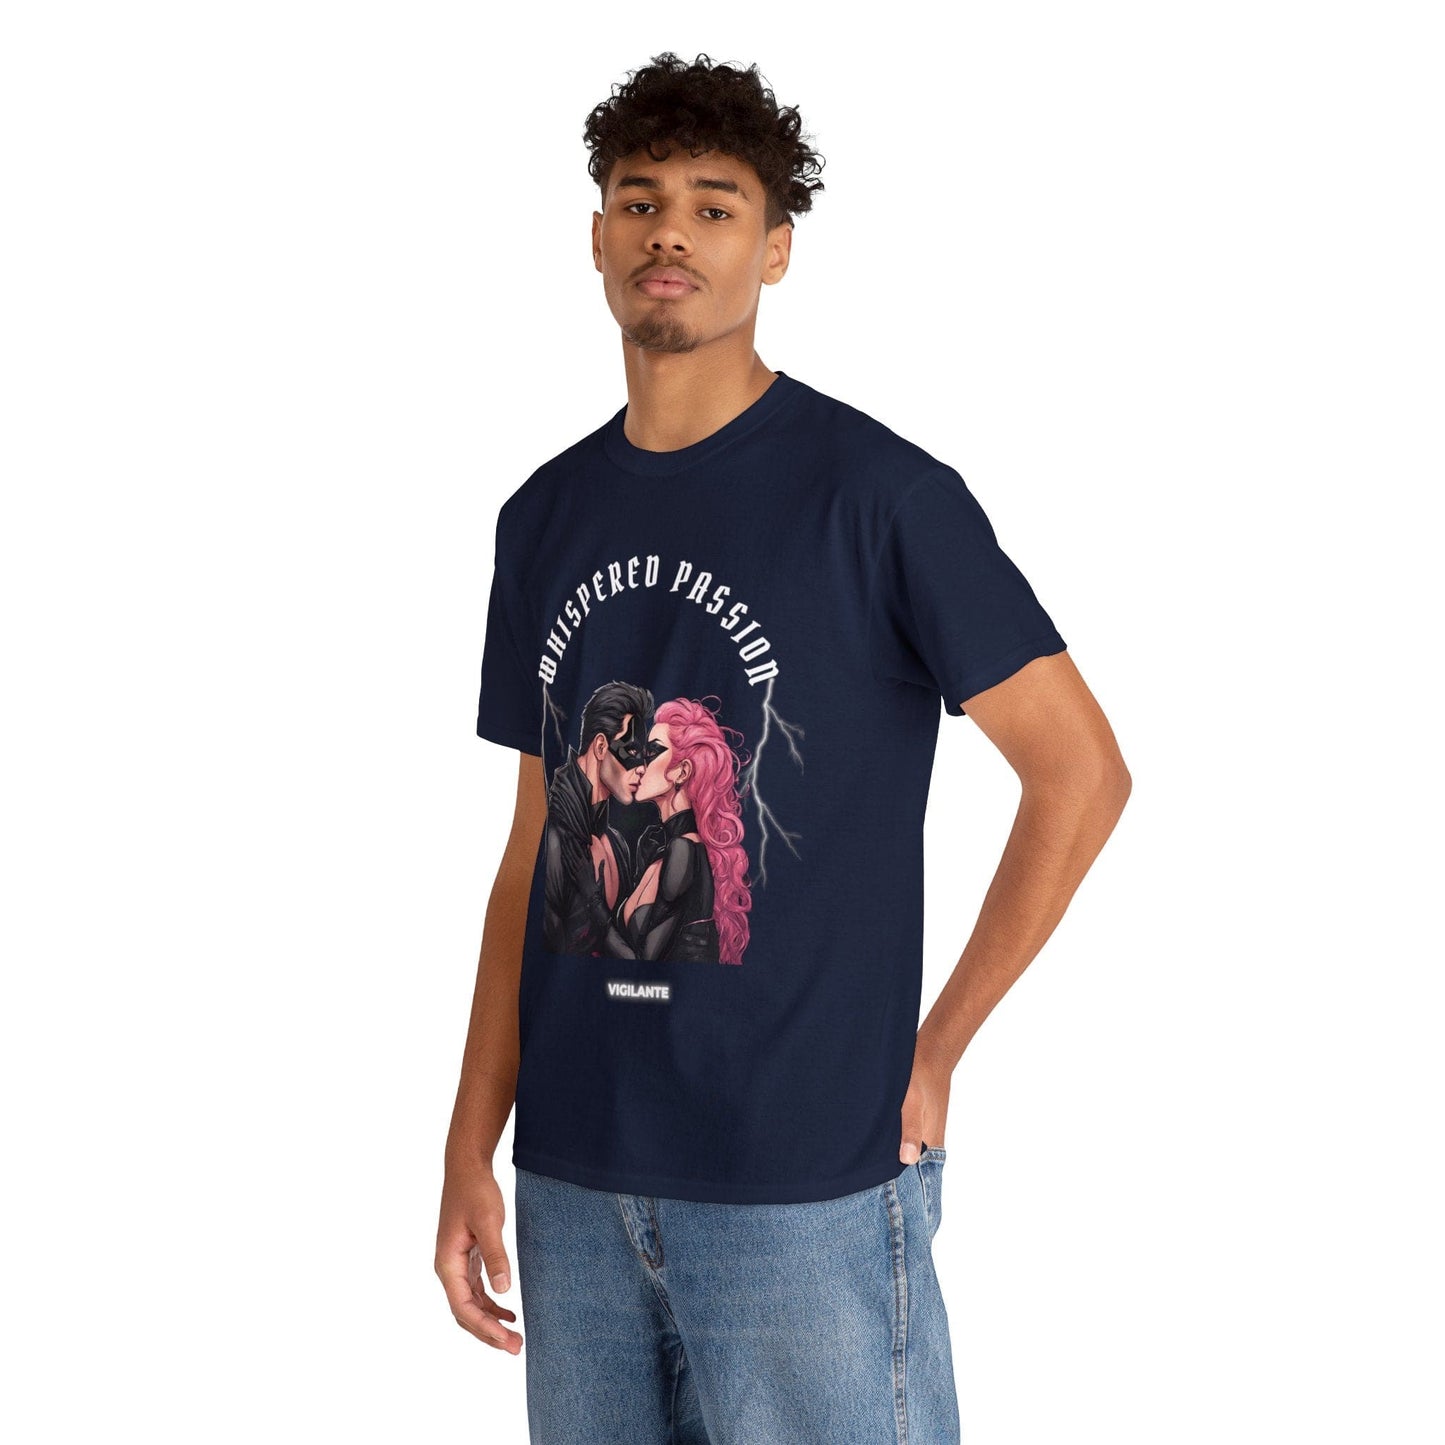 Super héroe camiseta Vigilante beso camisa susurrada pasión camiseta amor camiseta regalo para ella para él unisex camiseta de algodón pesado Flashlander